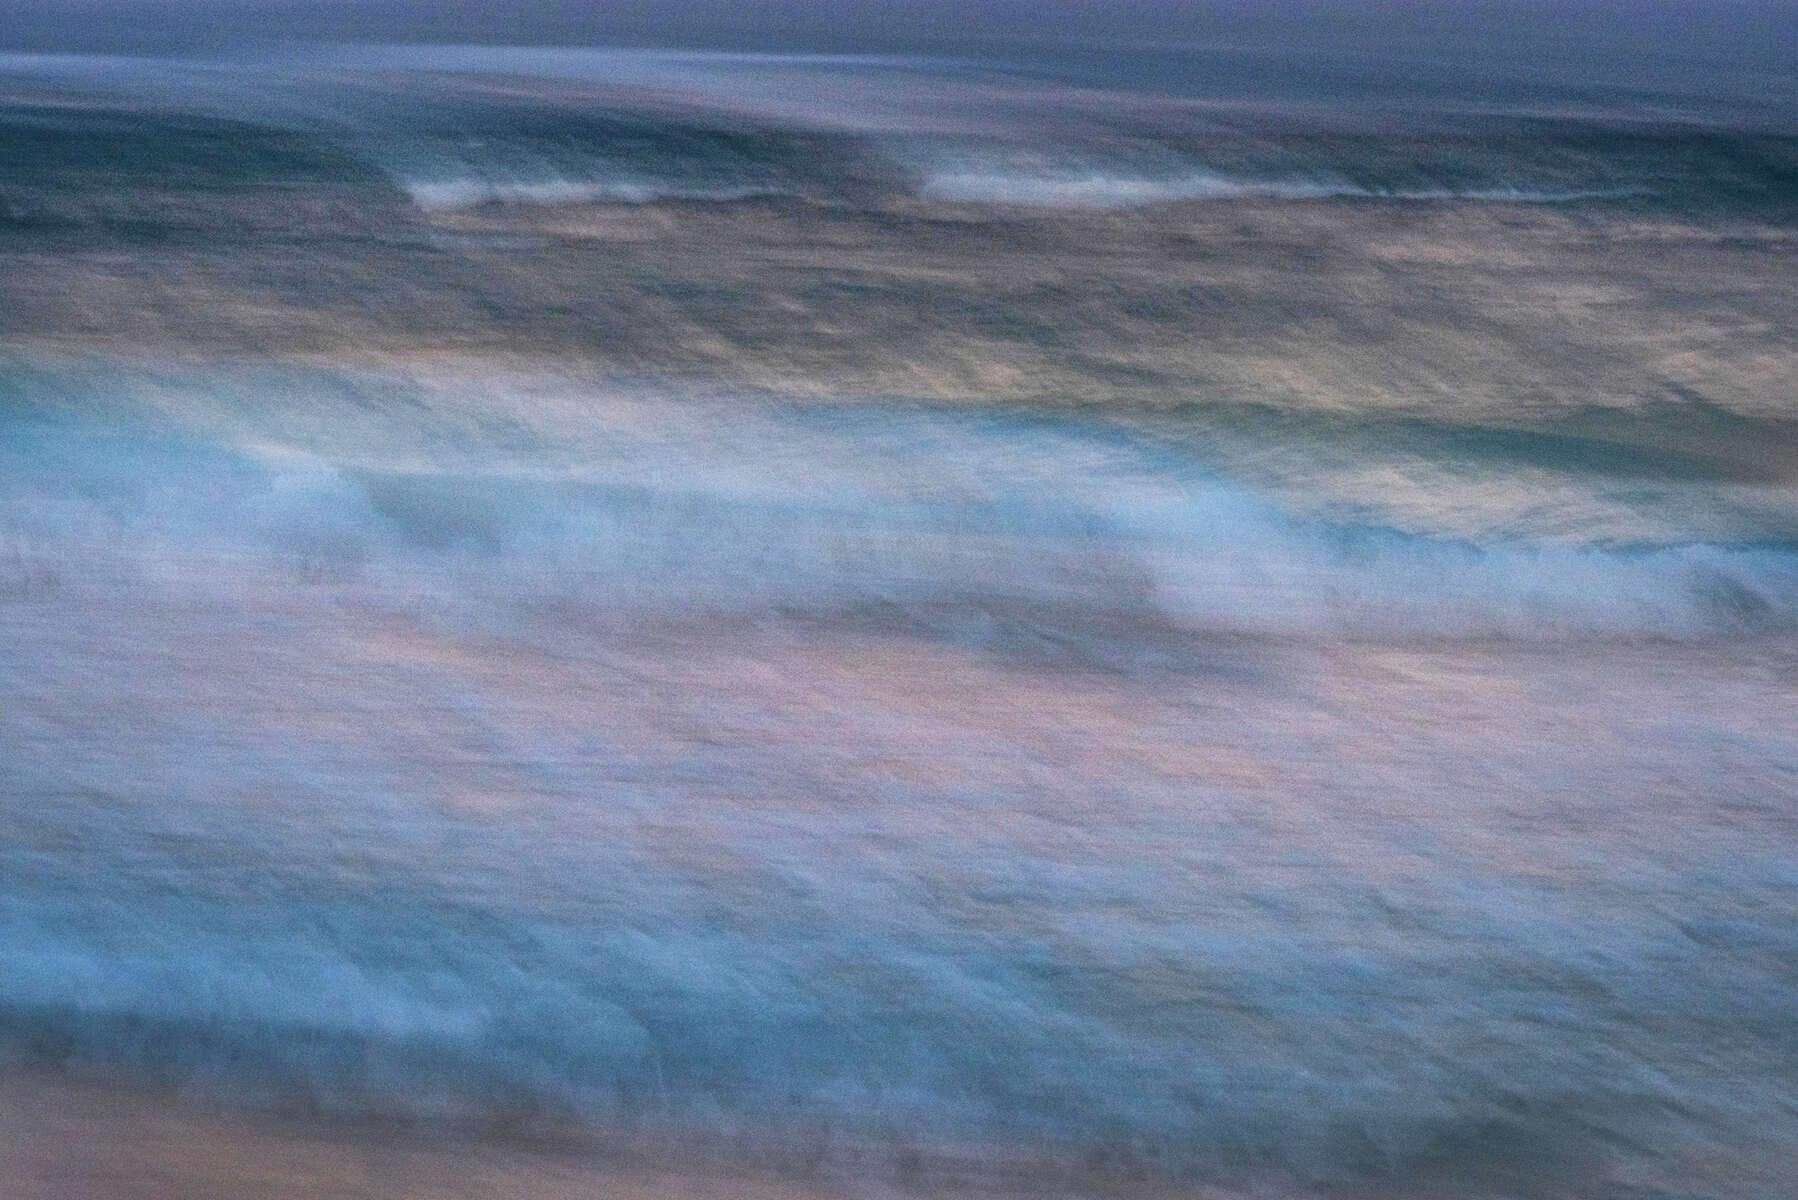 John Mazlish Abstract Photograph - "Mexican Sea Dusk"- Peaceful Evening on the Beach, Tulum, Mexico